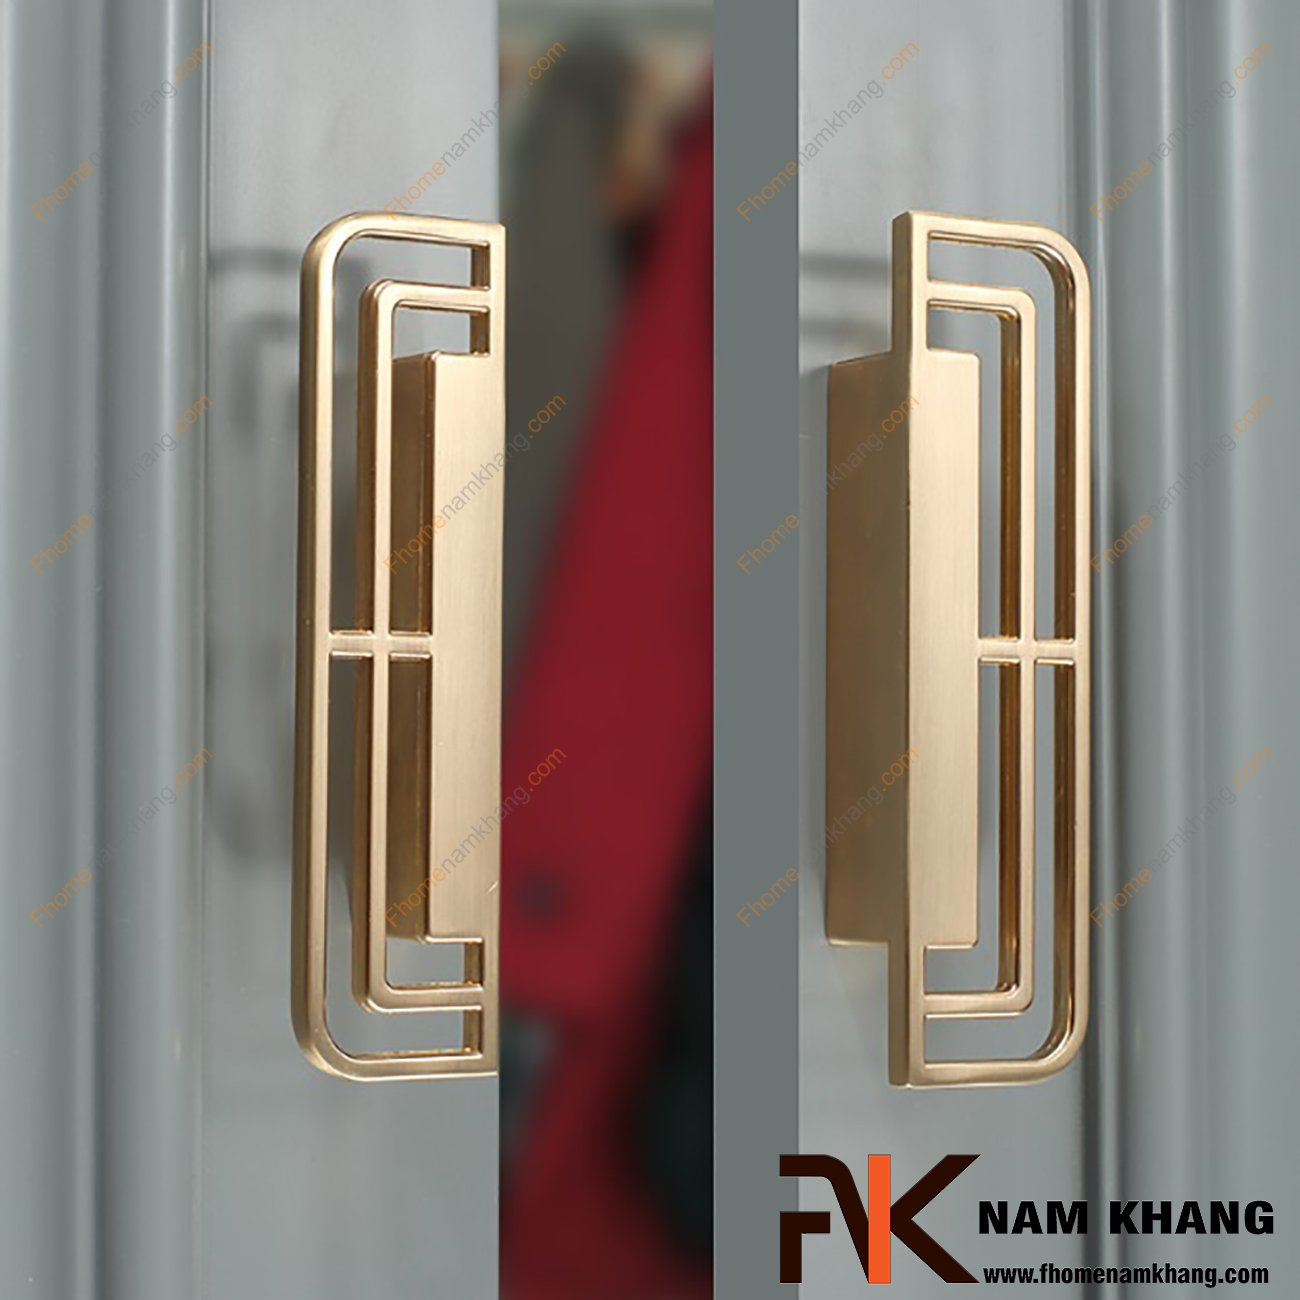 Tay kéo cửa tủ dạng cặp màu vàng mờ NK225-VM là một sản phẩm cách điệu được mang thiết kế dạng lưới chữ nhật tuyệt đẹp.